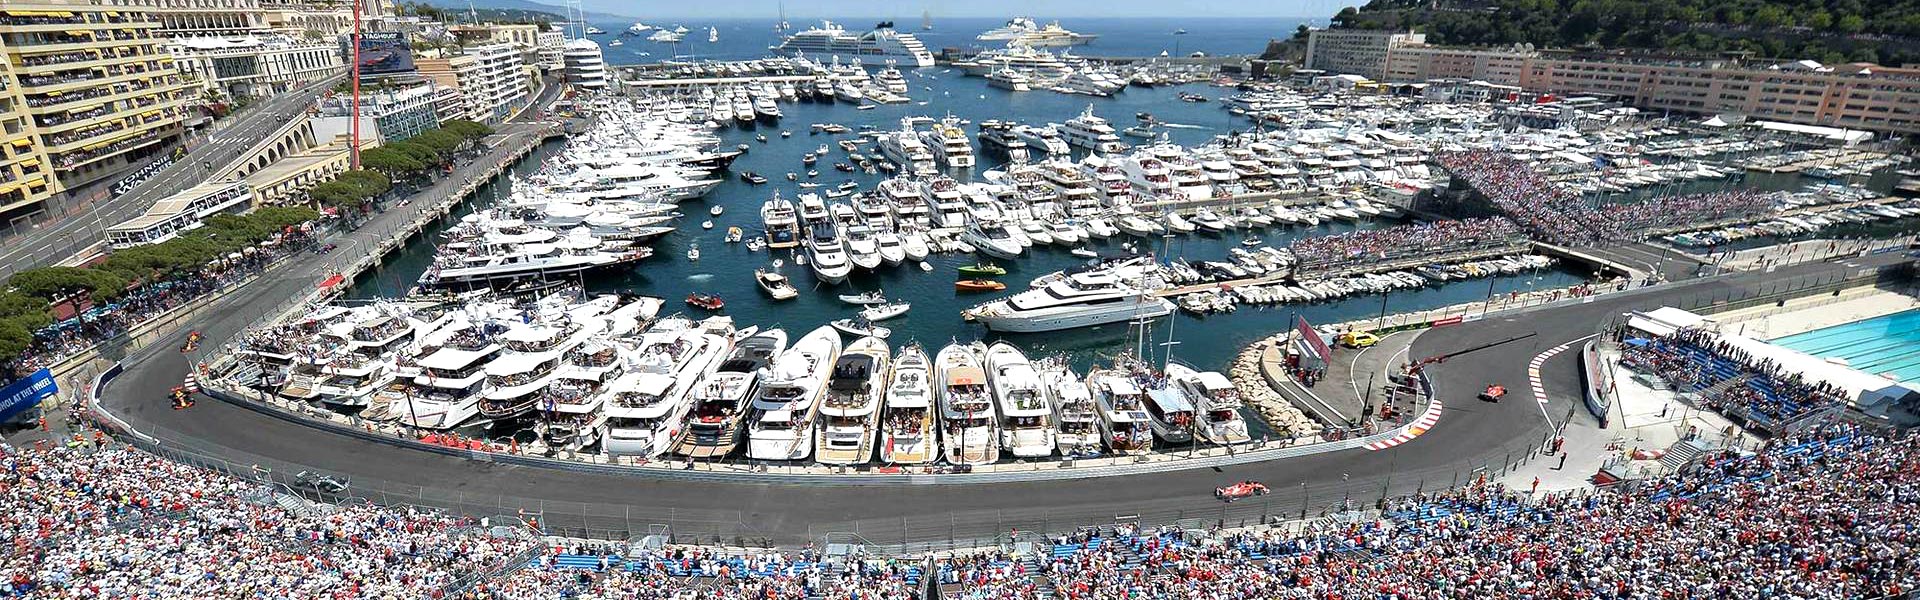 Monaco-Grand-Prix-Silversea